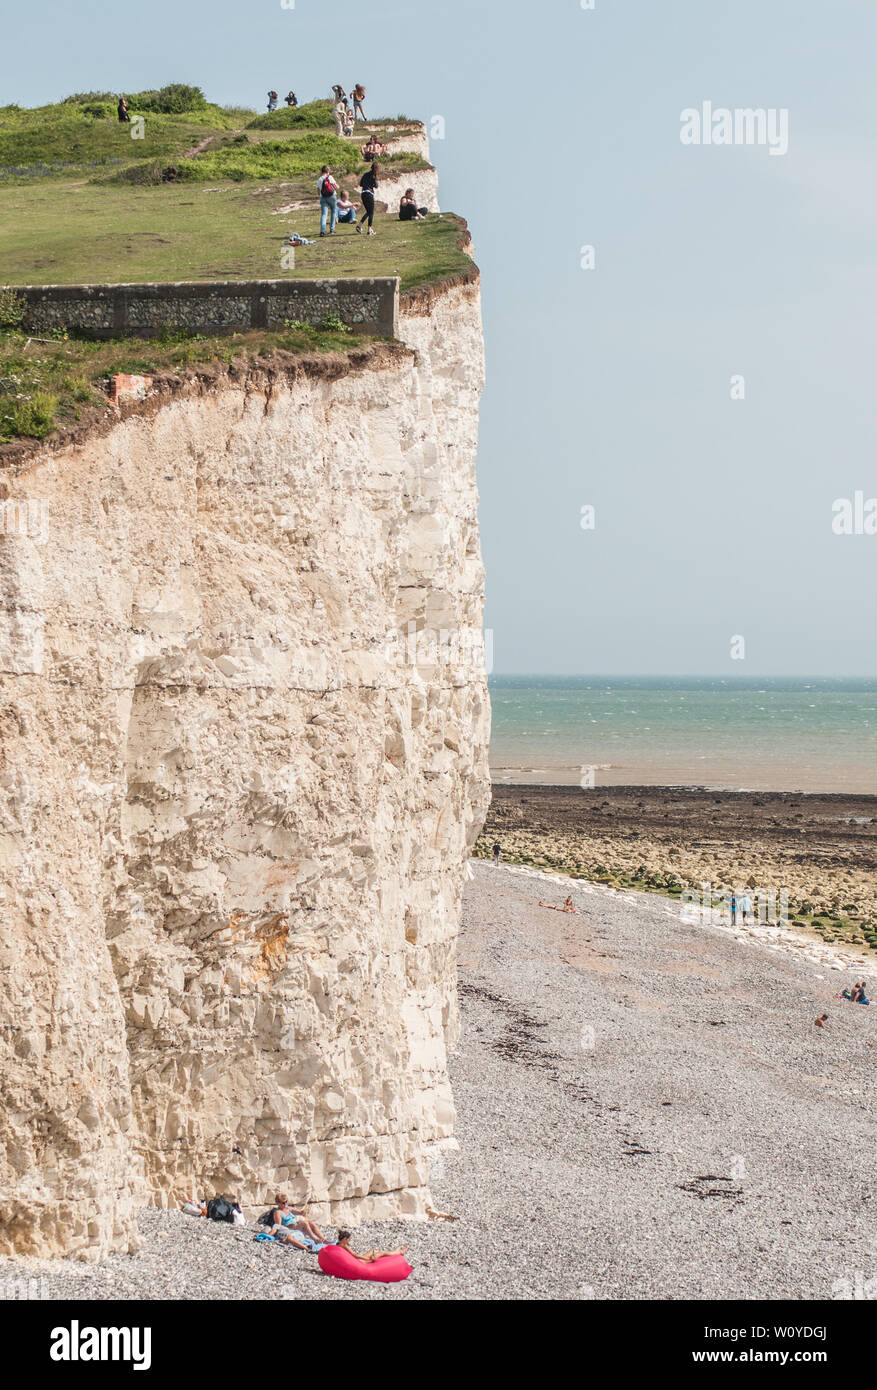 Birling Gap, Eastbourne, East Sussex. 28 De Junio De 2019. Clima en el Reino Unido: El espléndido clima de verano está trayendo a los turistas al lugar de belleza de la costa sur. Algunos parecen desconocer la fragilidad y subcotización a lo largo de los acantilados de tiza. Las caídas de roca ocurren con frecuencia. No es seguro en el borde. Por favor, mantenga la seguridad. . Foto de stock